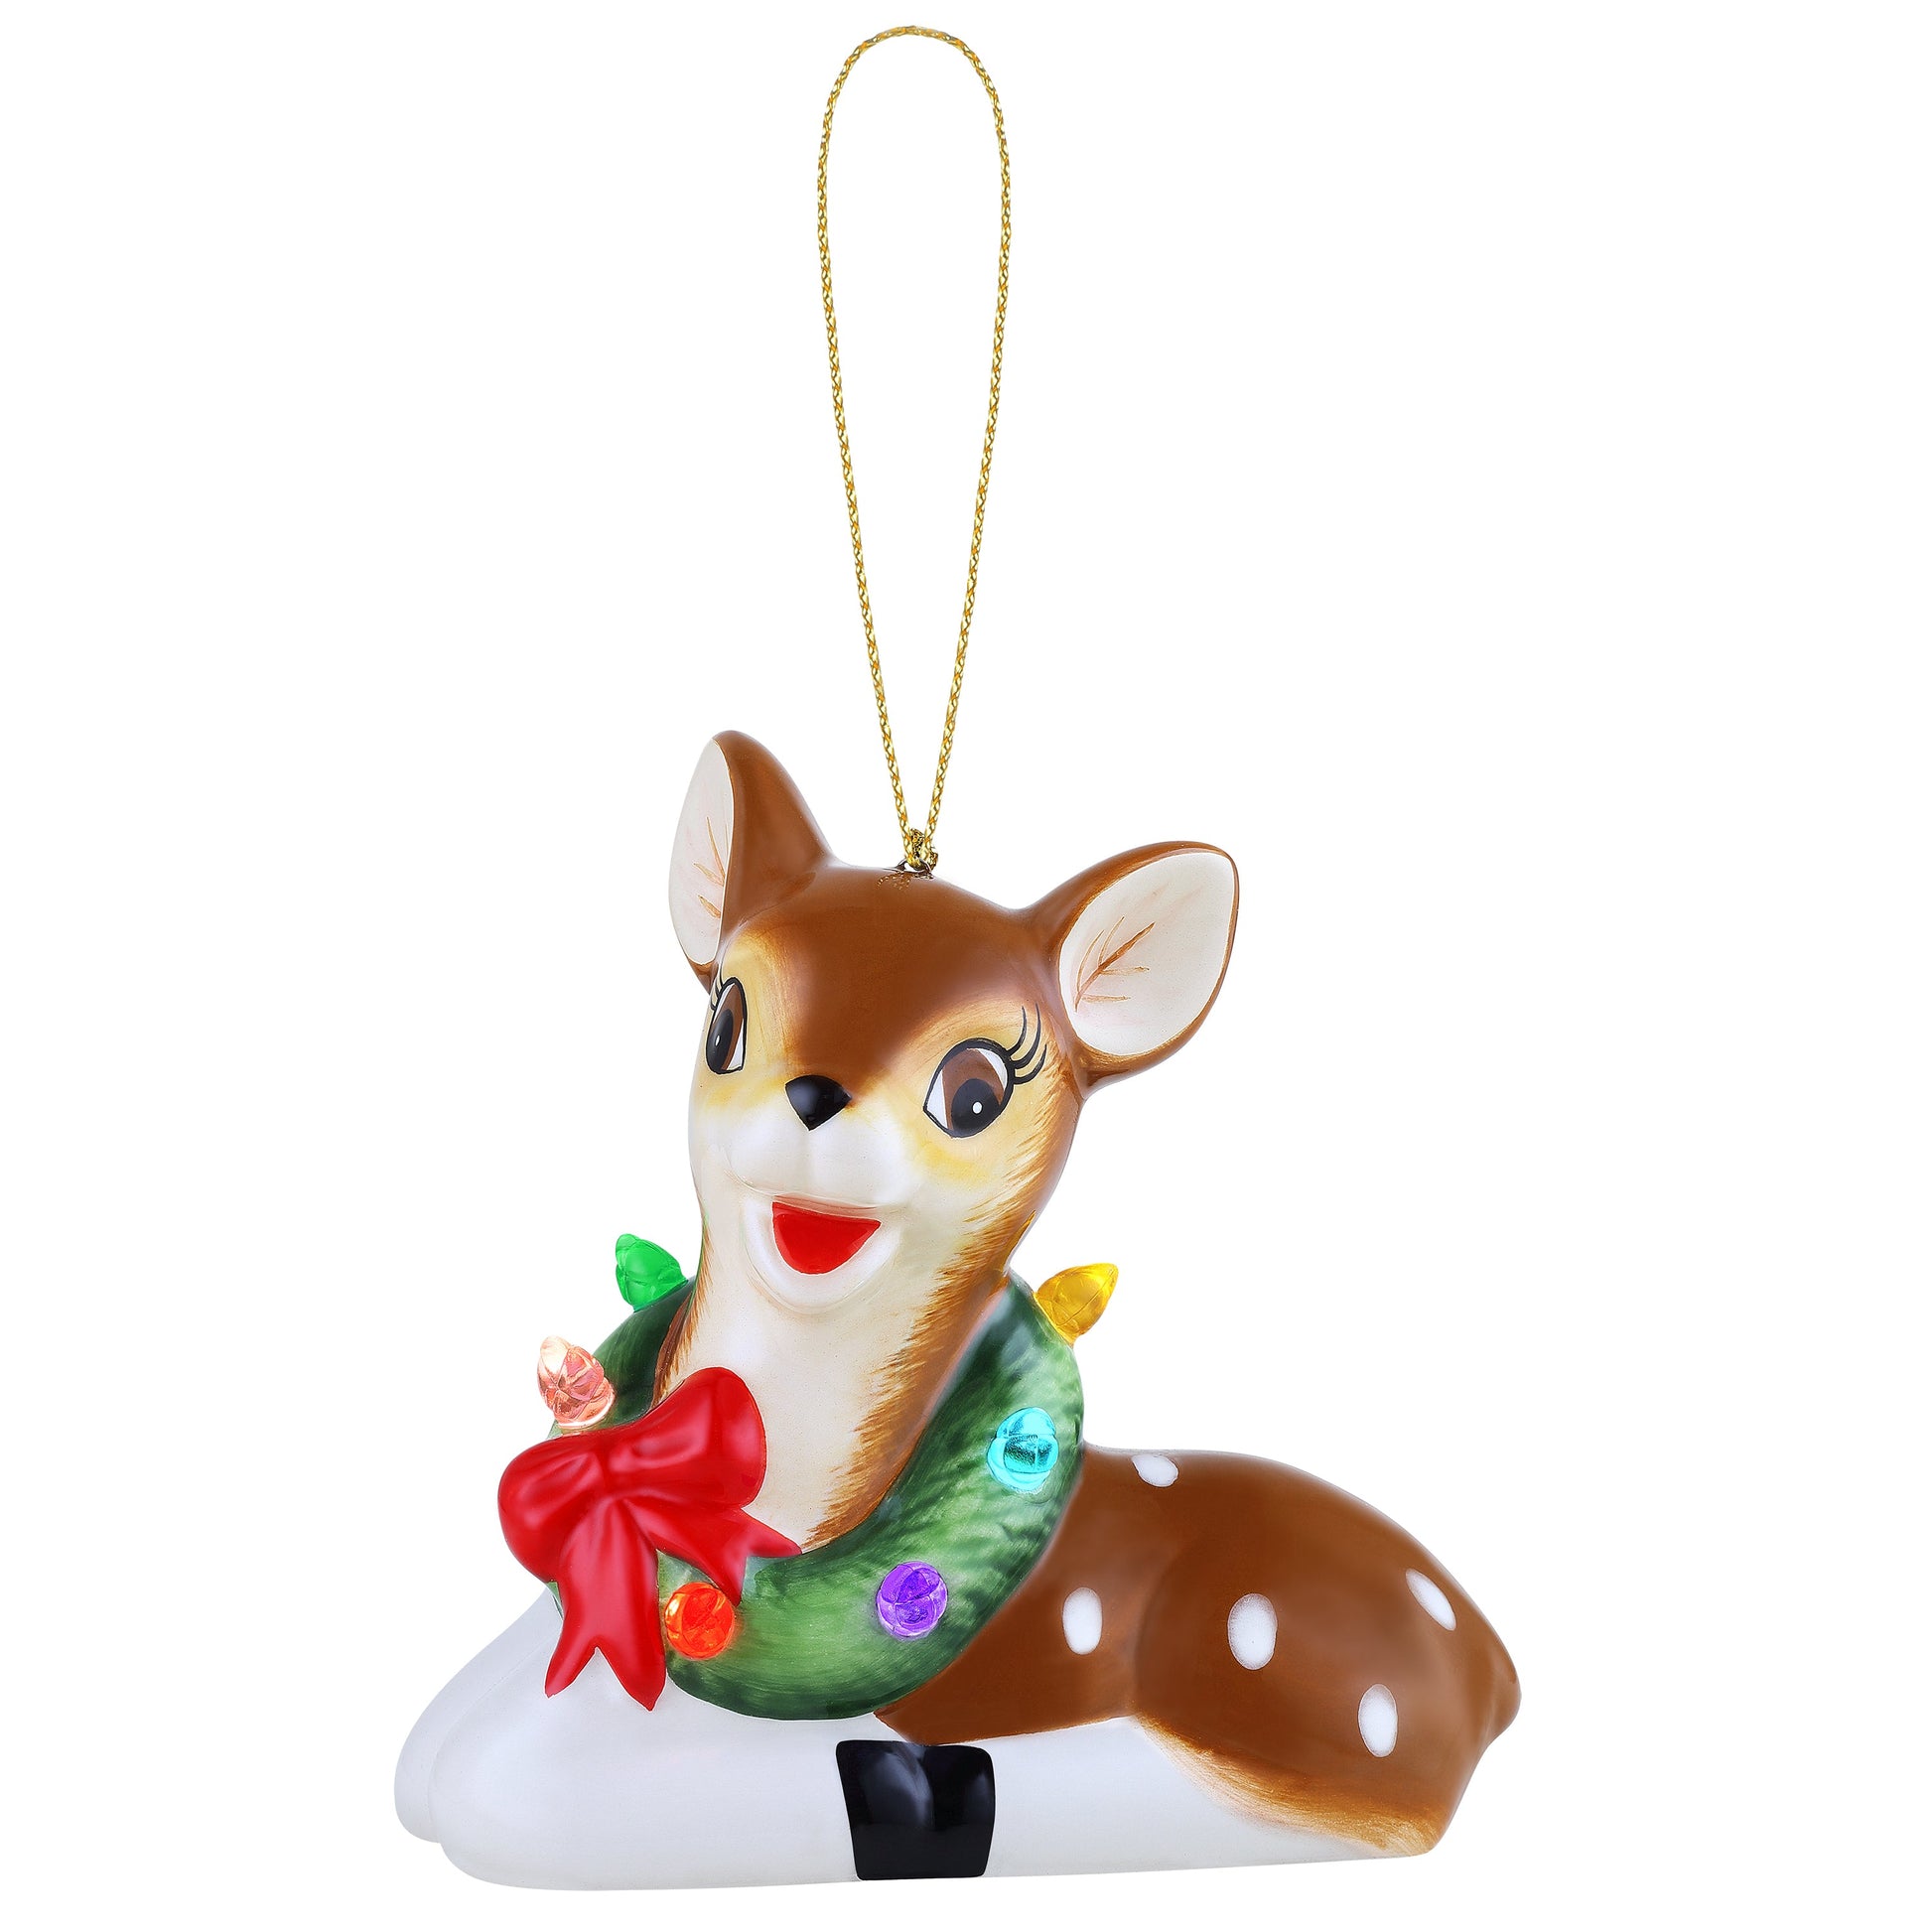 Mini Nostalgic Ceramic Figure - Reindeer